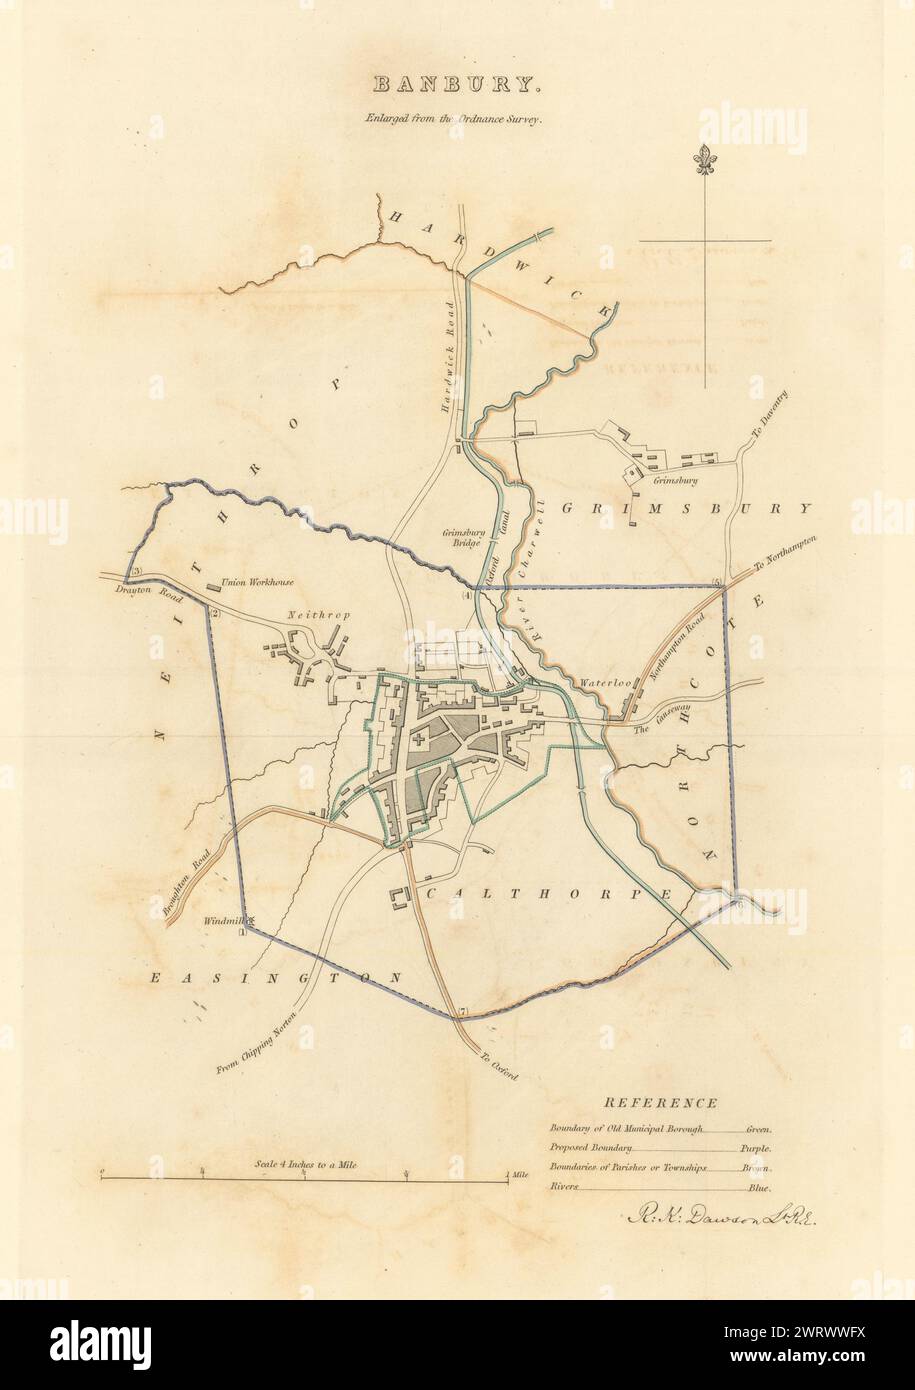 BANBURY Gemeinde/Stadt planen. Grenzkommission. Oxfordshire. DAWSON 1837 Karte Stockfoto